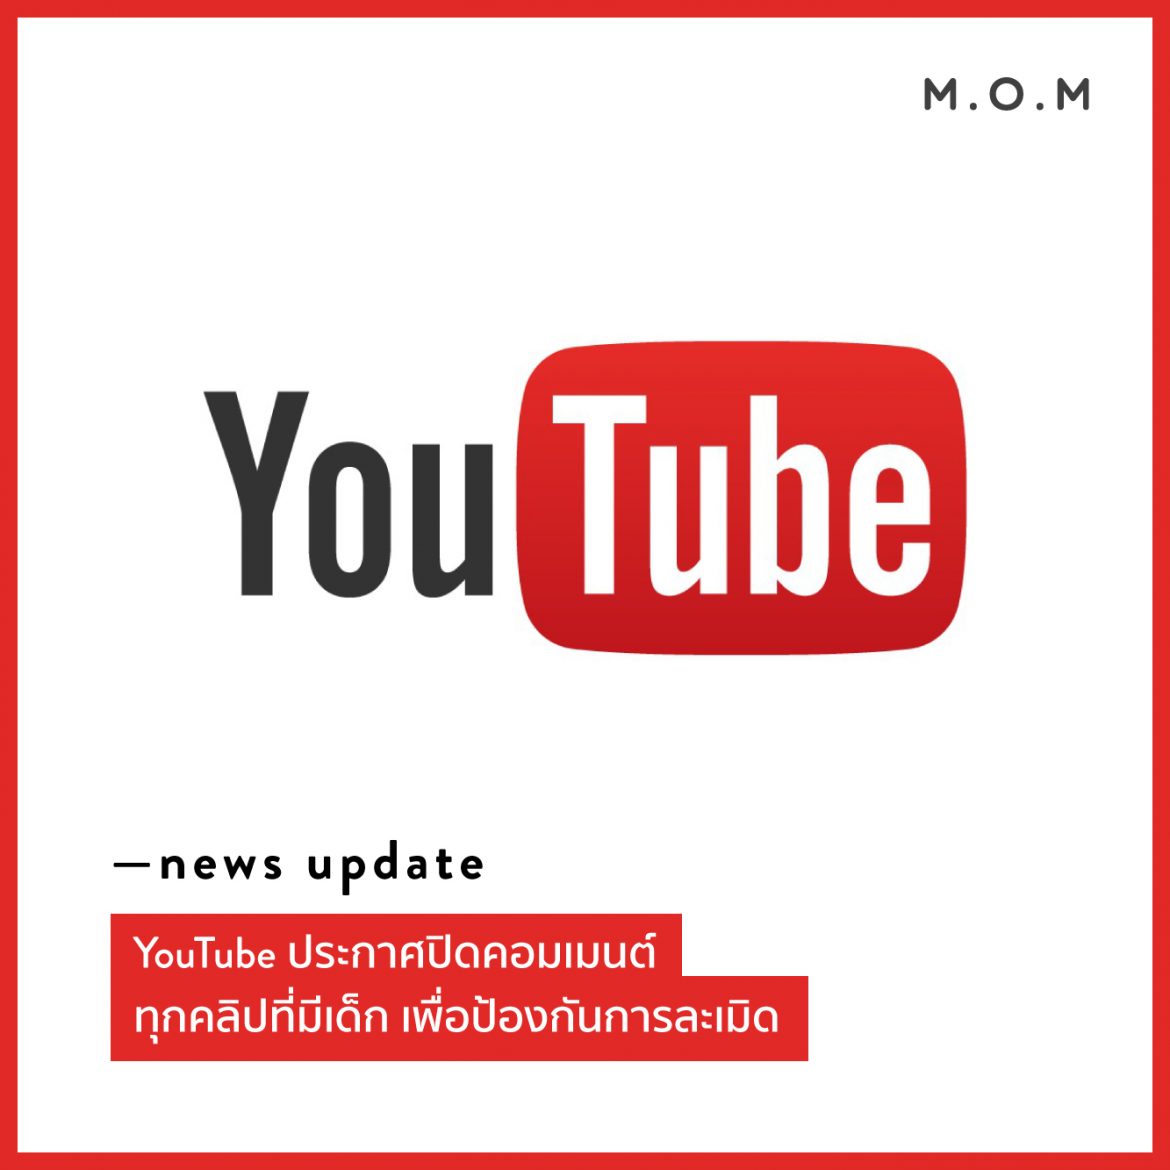 News Update: Youtube ประกาศปิดคอมเมนต์ทุกคลิปที่มีเด็ก  เพื่อป้องกันการละเมิด - M.O.M